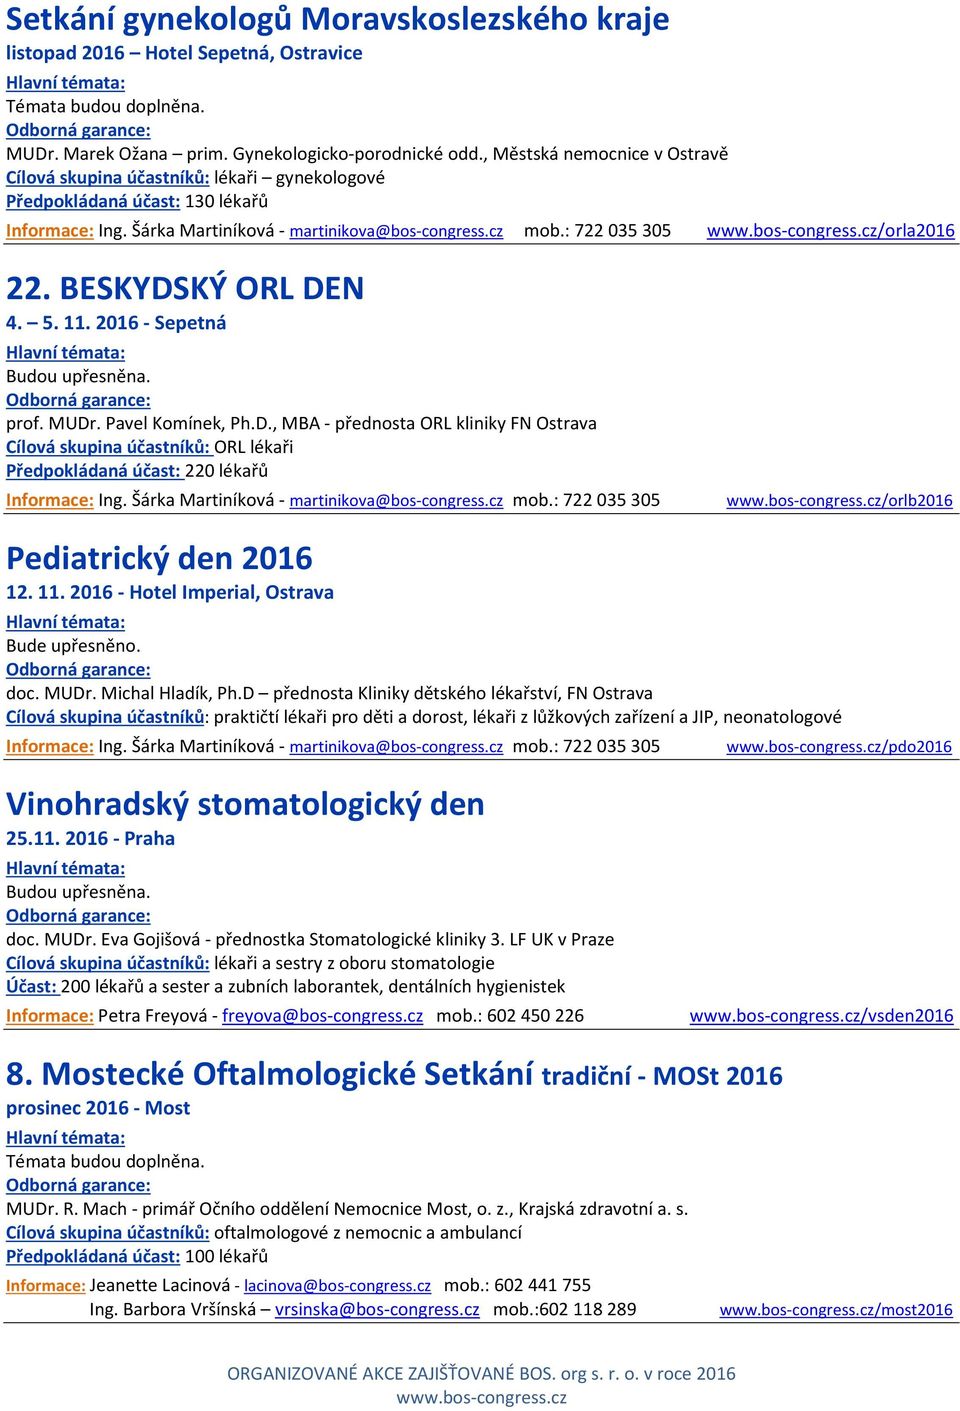 KÝ ORL DEN 4. 5. 11. 2016 - Sepetná prof. MUDr. Pavel Komínek, Ph.D., MBA - přednosta ORL kliniky FN Ostrava Cílová skupina účastníků: ORL lékaři Předpokládaná účast: 220 lékařů /orlb2016 Pediatrický den 2016 12.